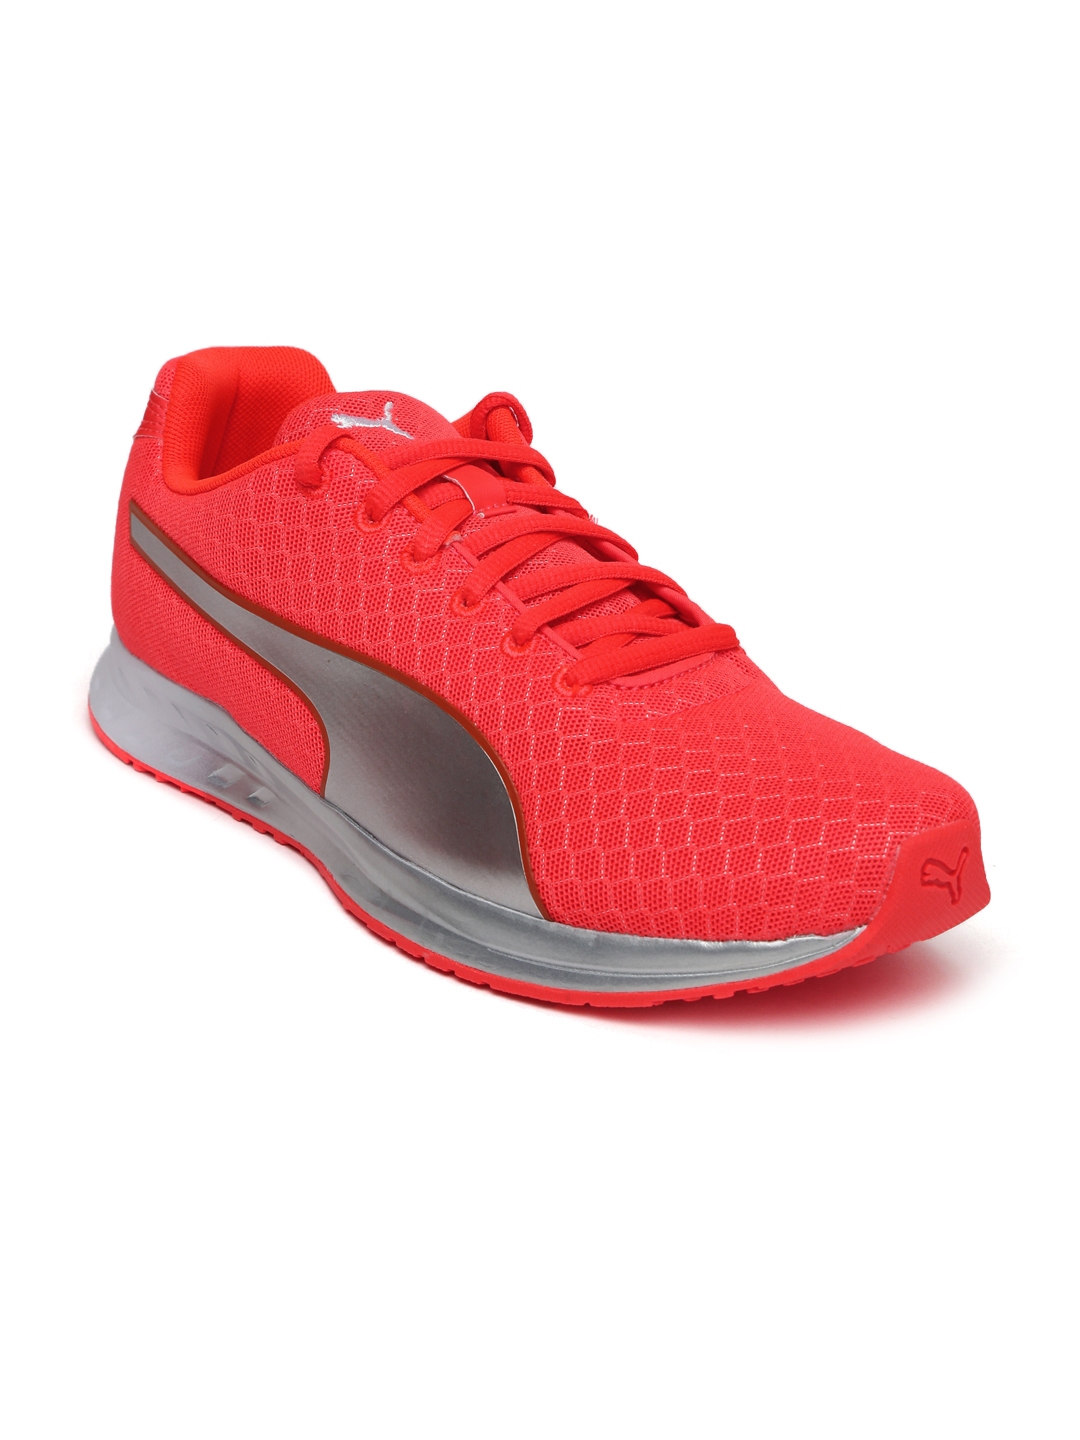 Buy PUMA Women Neon Orange Running Shoes - Sports Shoes for Women ...